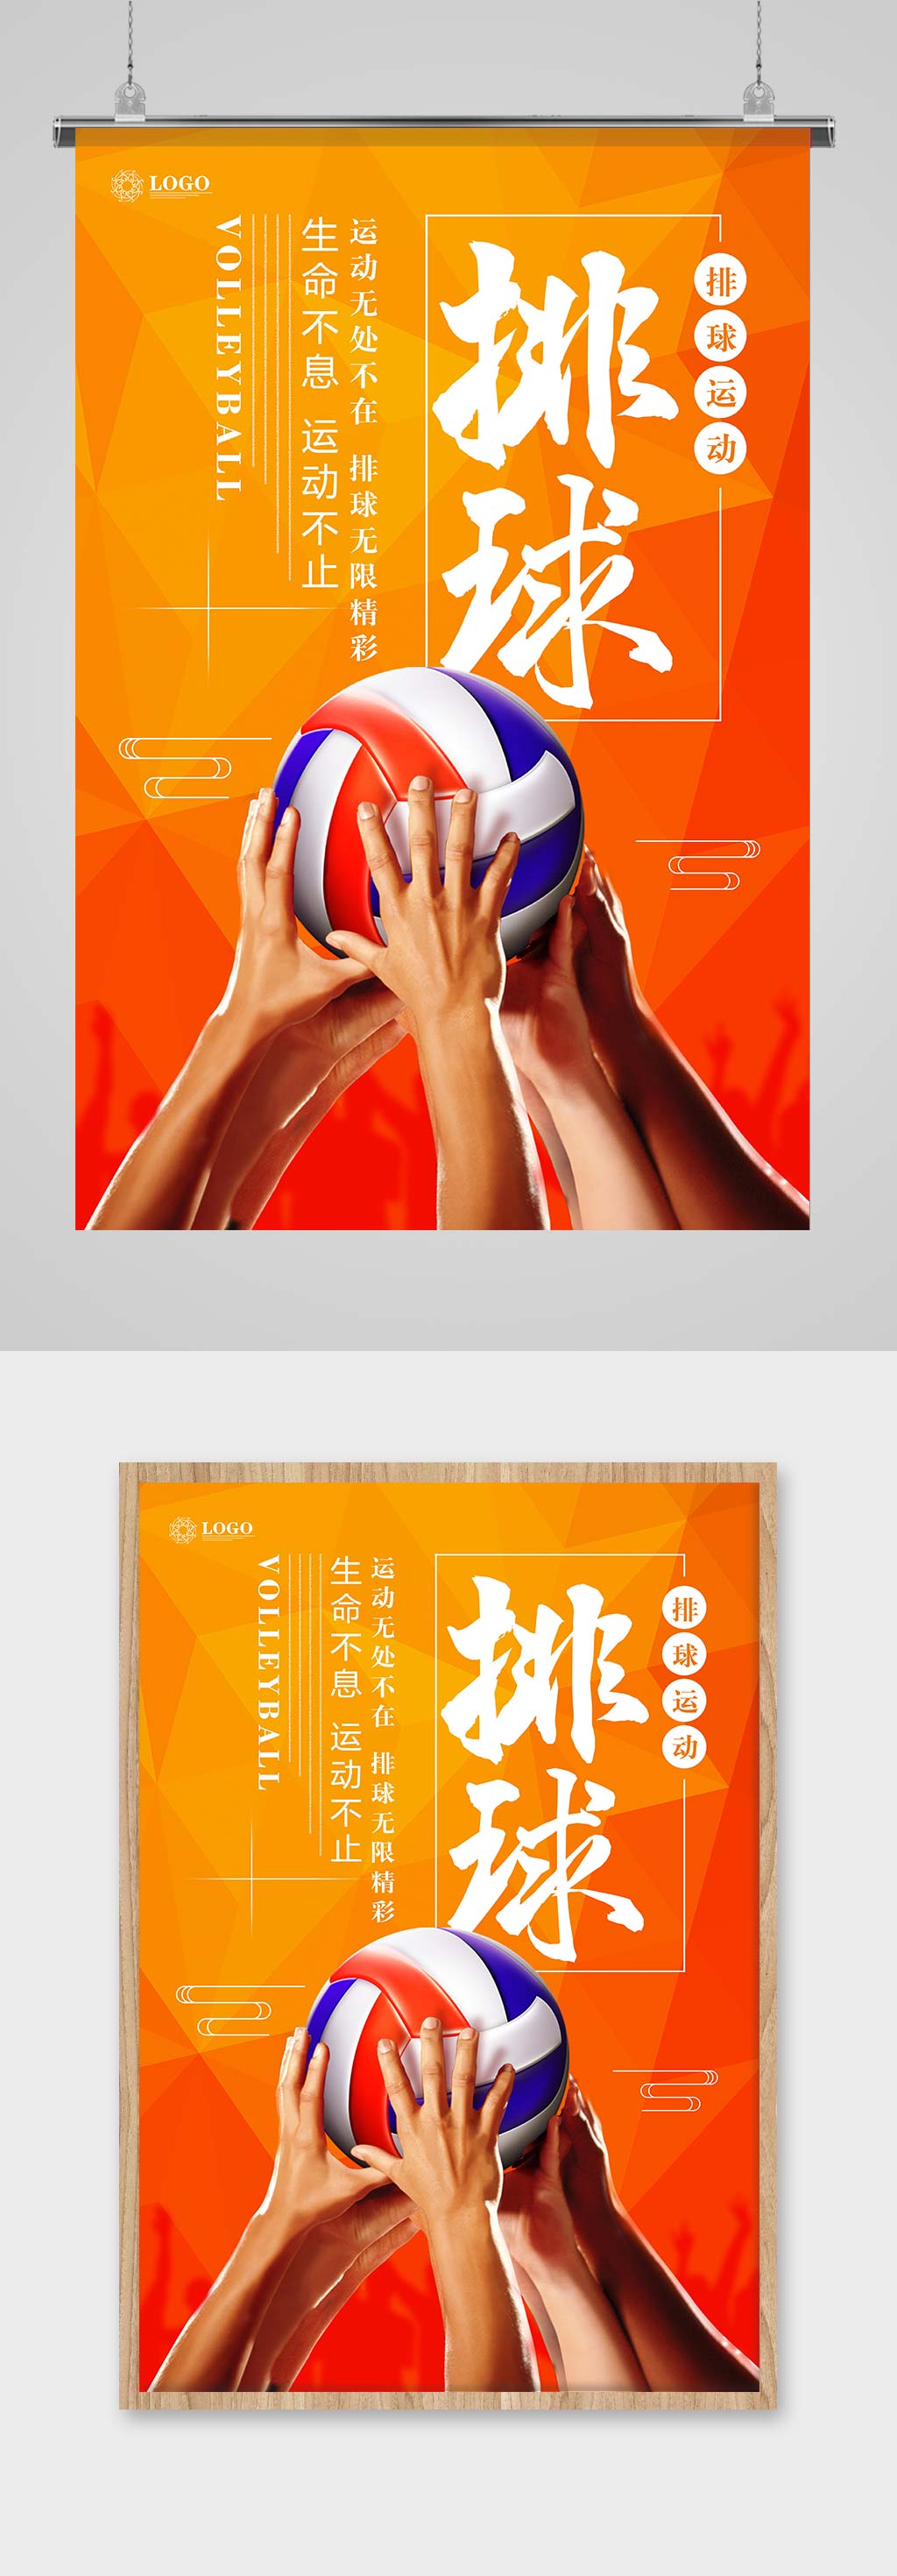 排球比赛海报立即下载精品棒球手套棒球棒免抠素材设计立即下载精品